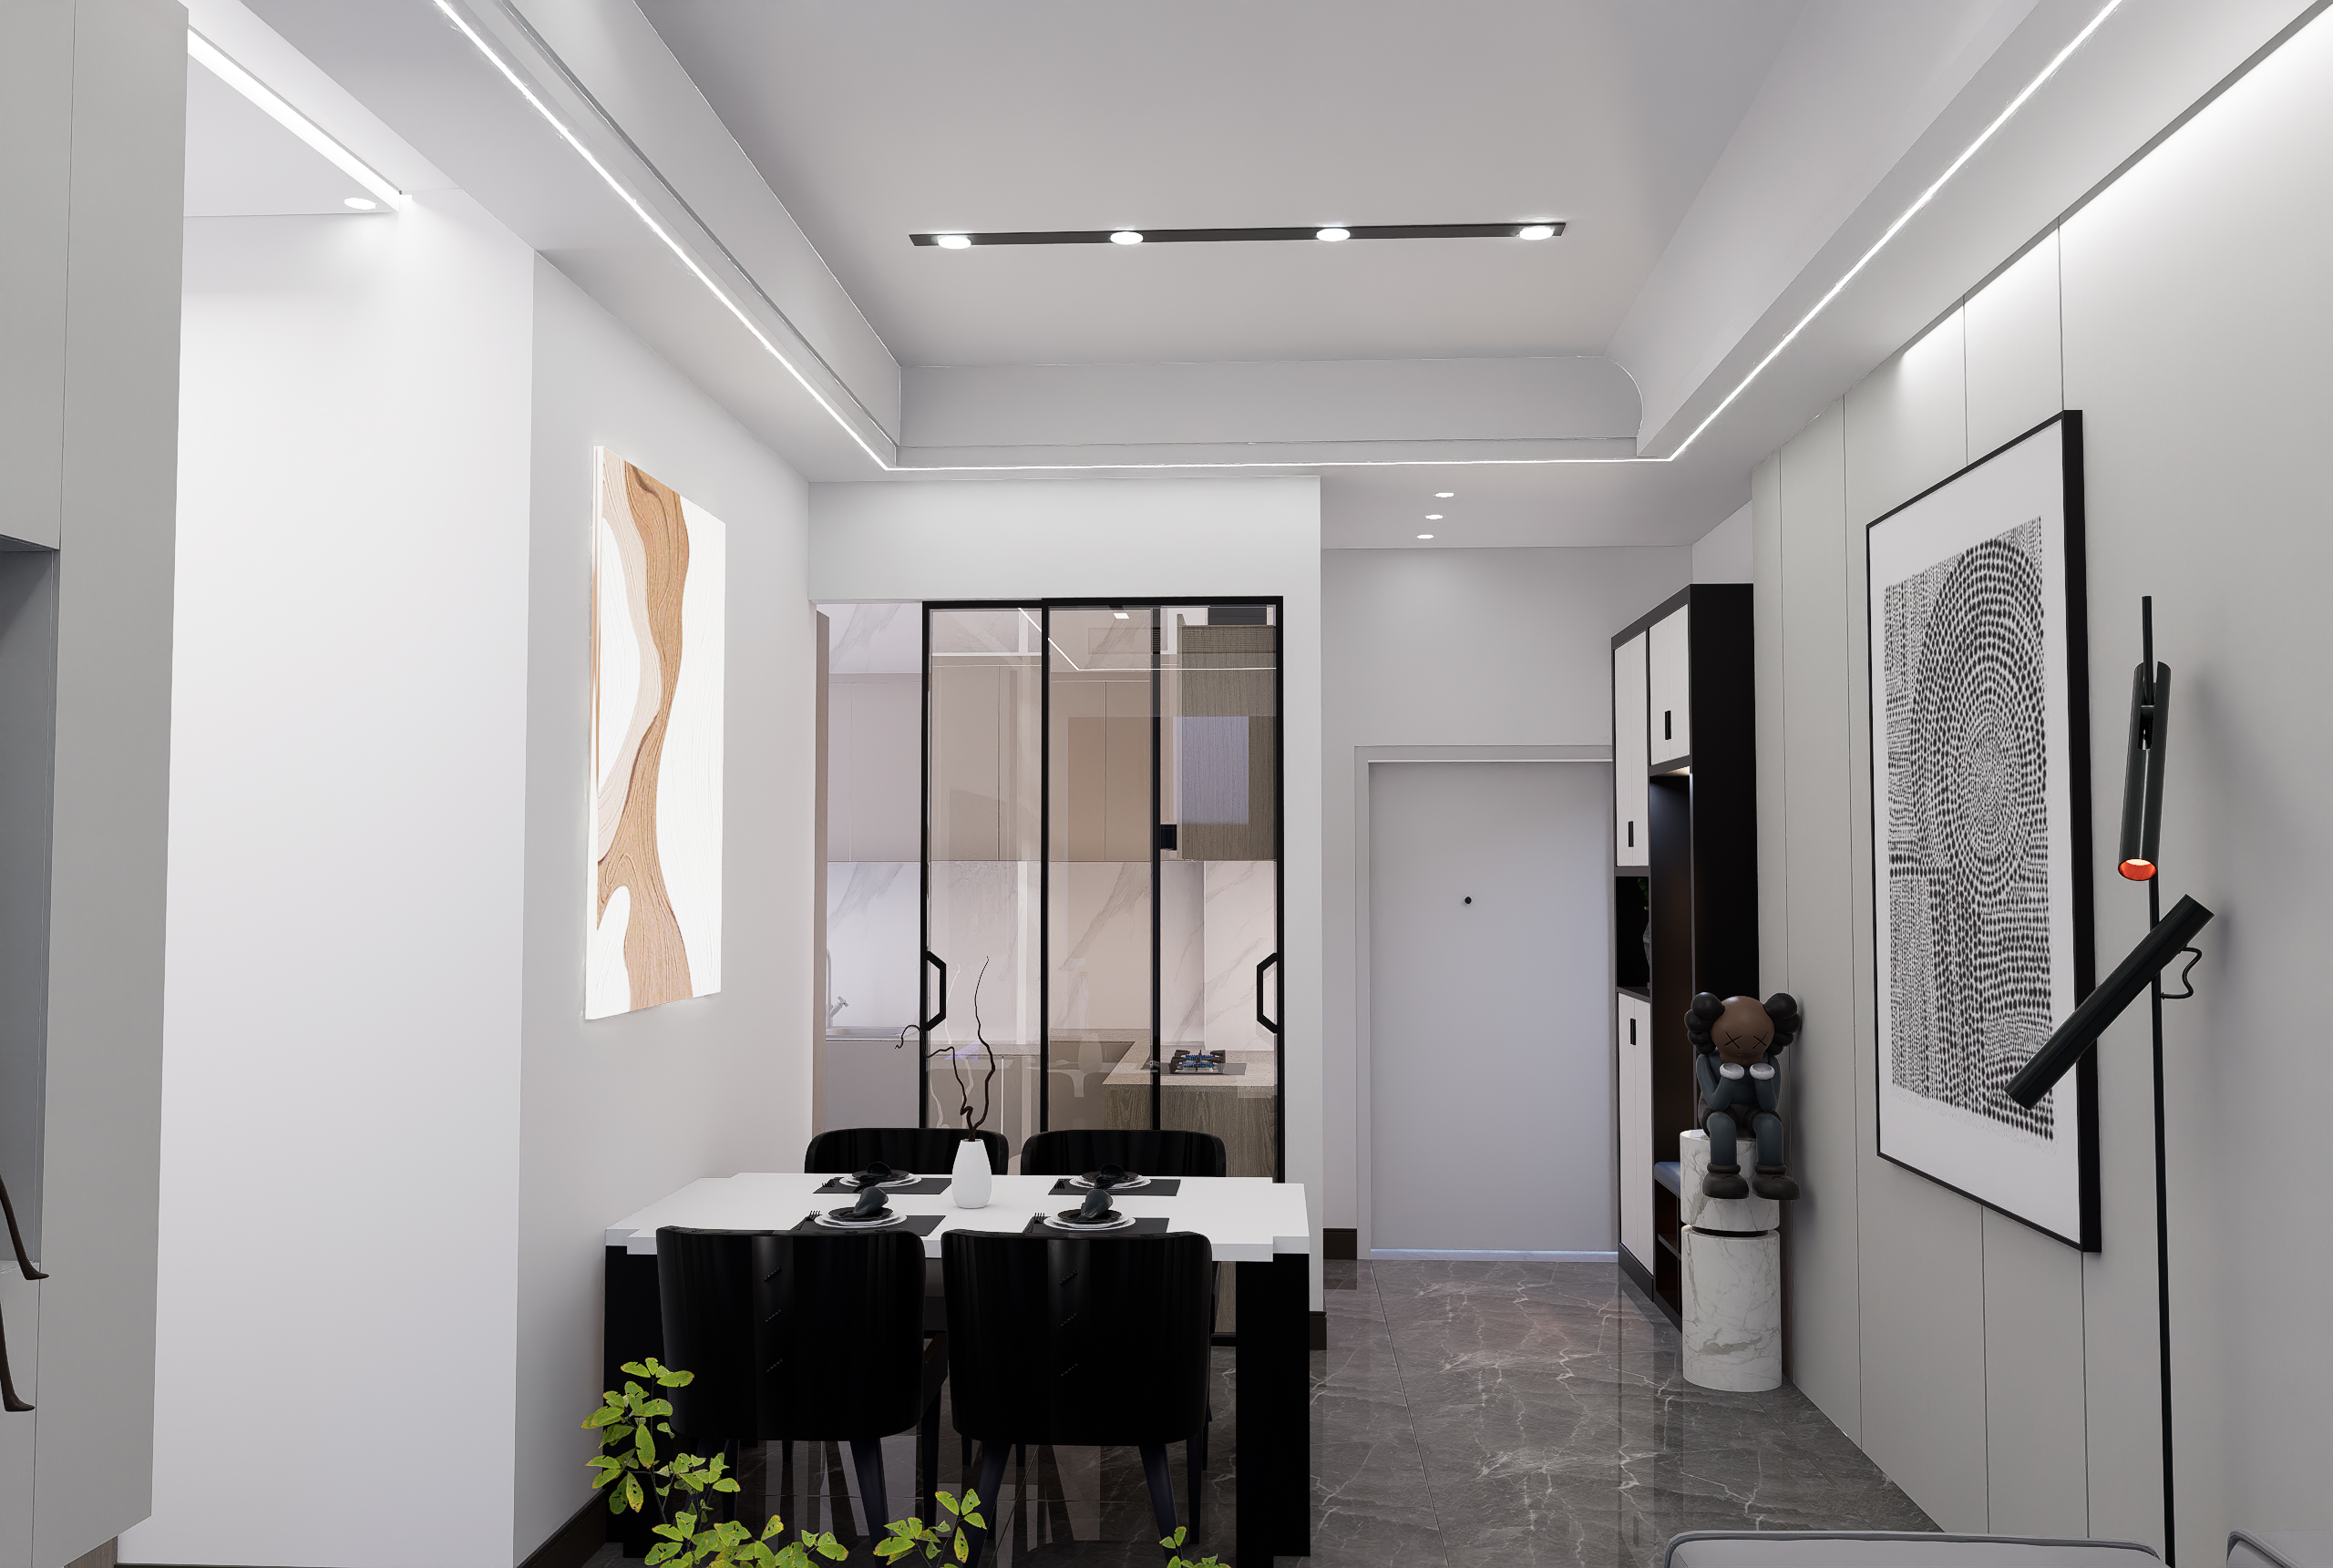 室内空间设计三房一厅简洁素颜风格效果图施工图